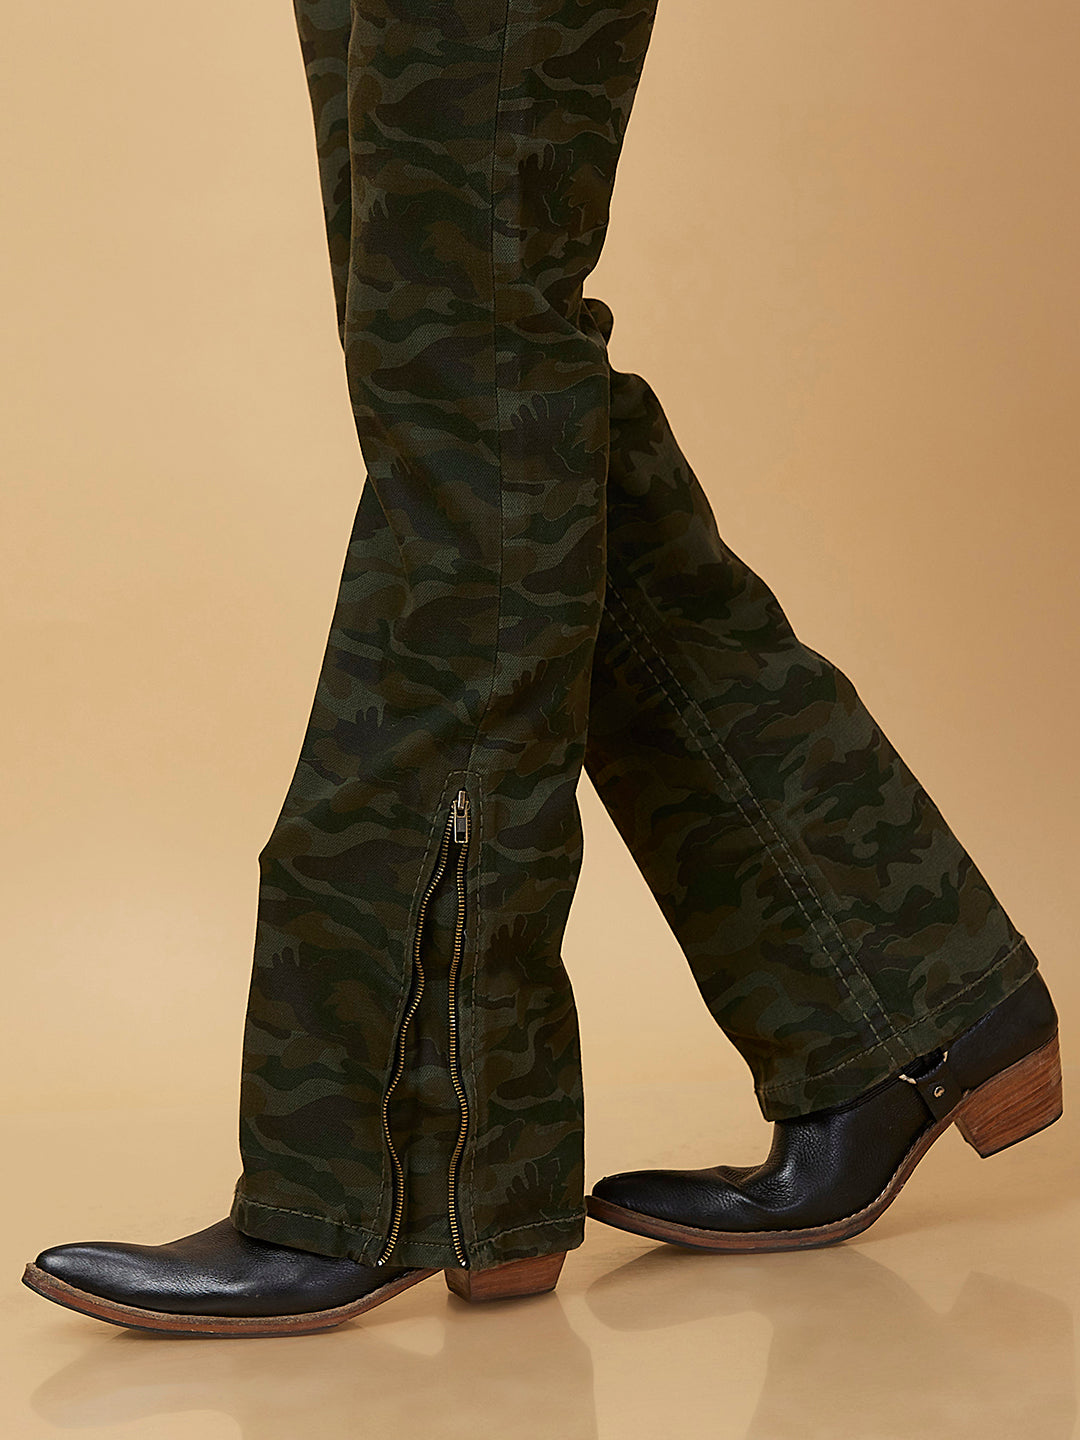 Dark Green Camouflage Boot-cut Jeans Zipper Bottom